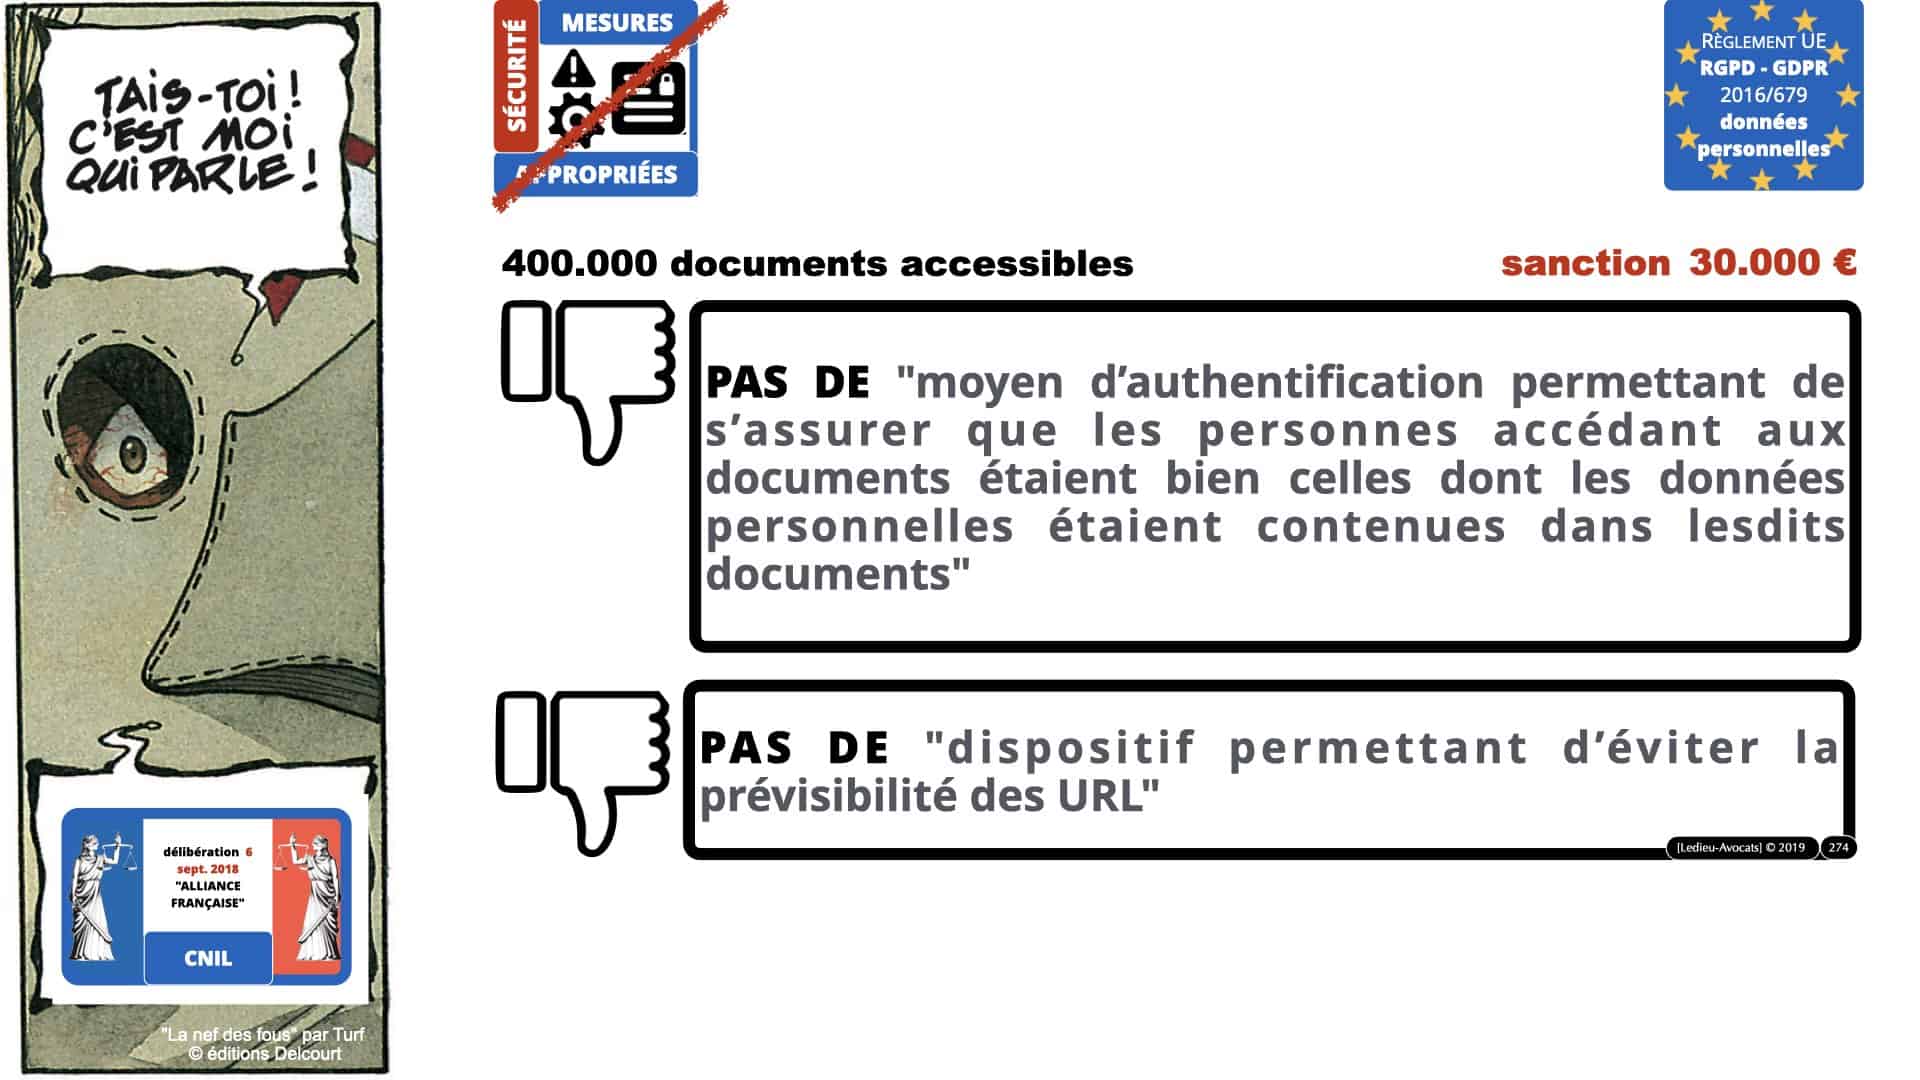 RGPD e-Privacy données personnelles jurisprudence formation Lamy Les Echos 10-02-2021 ©Ledieu-Avocats.274